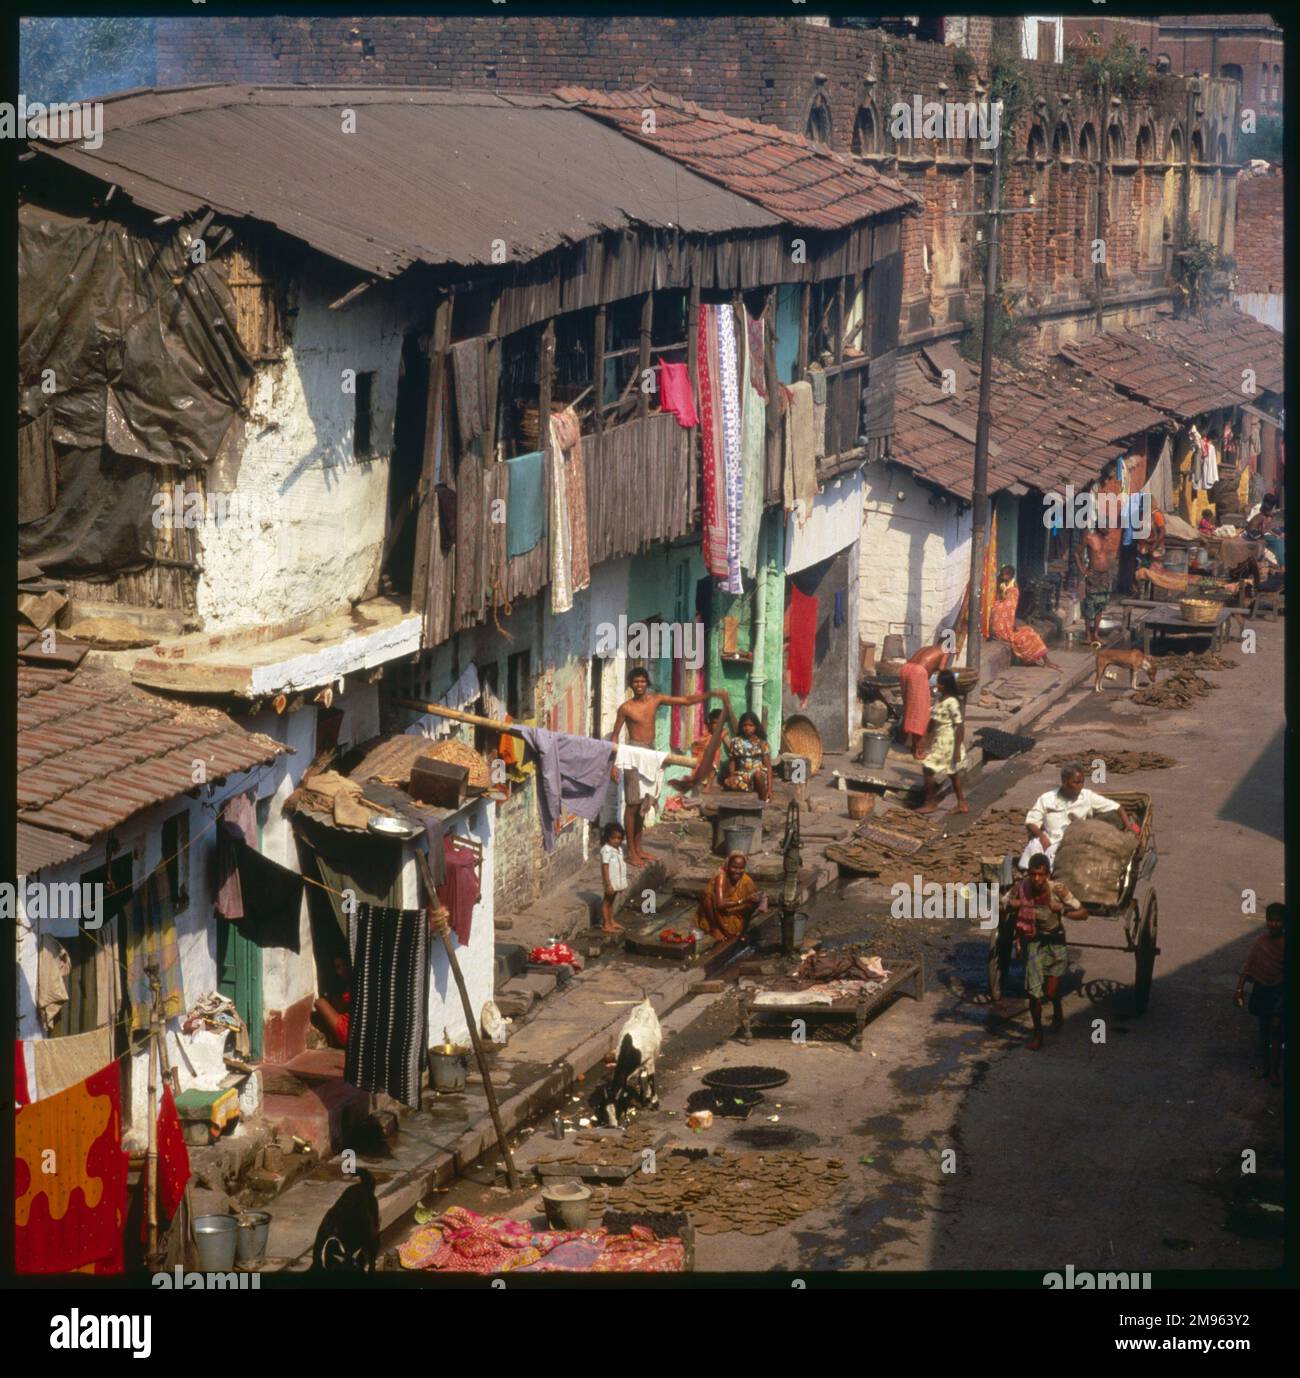 Aerial view of slum housing in Calcutta, India. Stock Photo